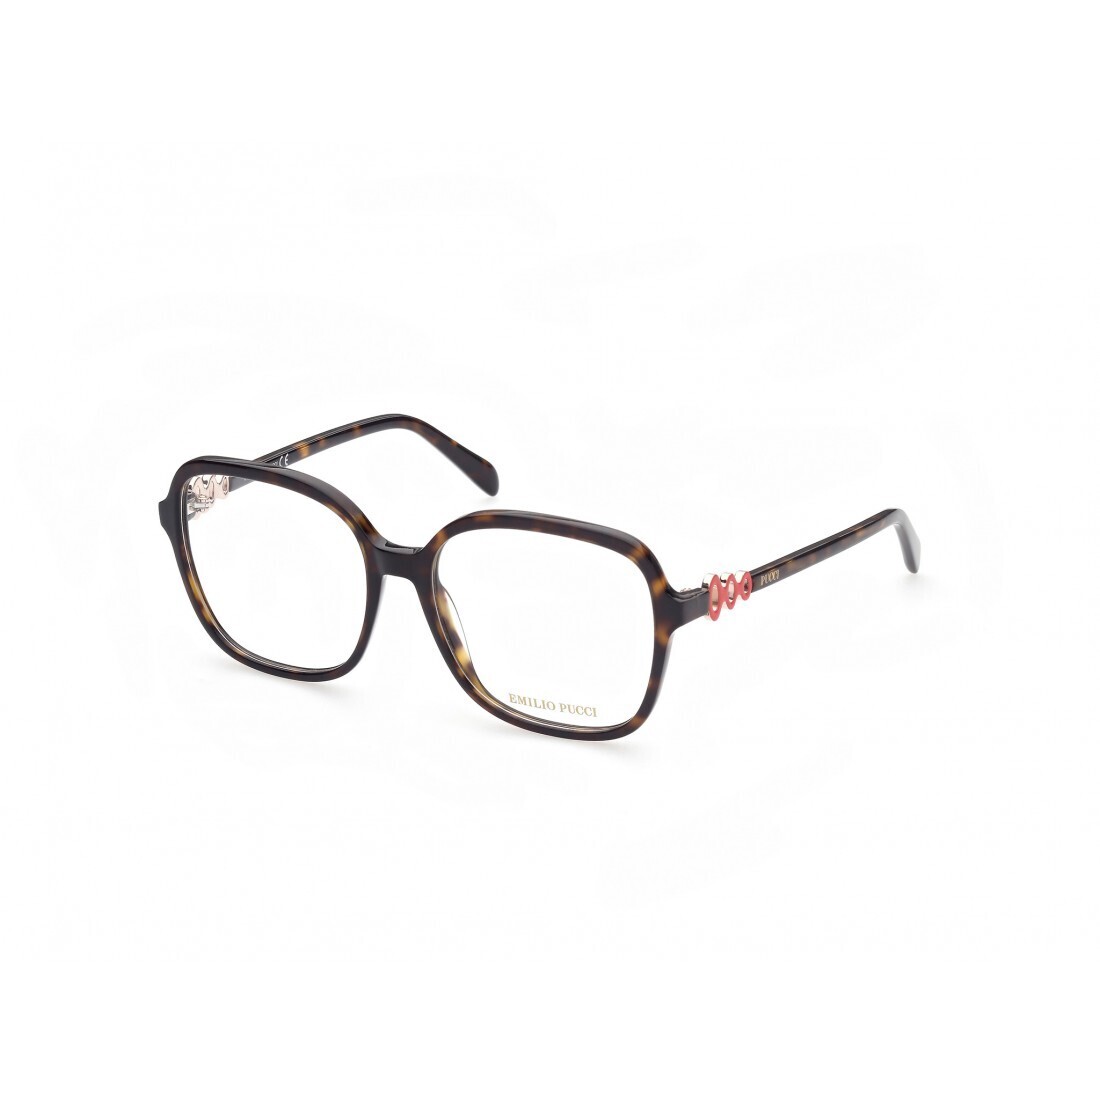 EMILIO PUCCI 5177/V 052 tartarugato occhiali